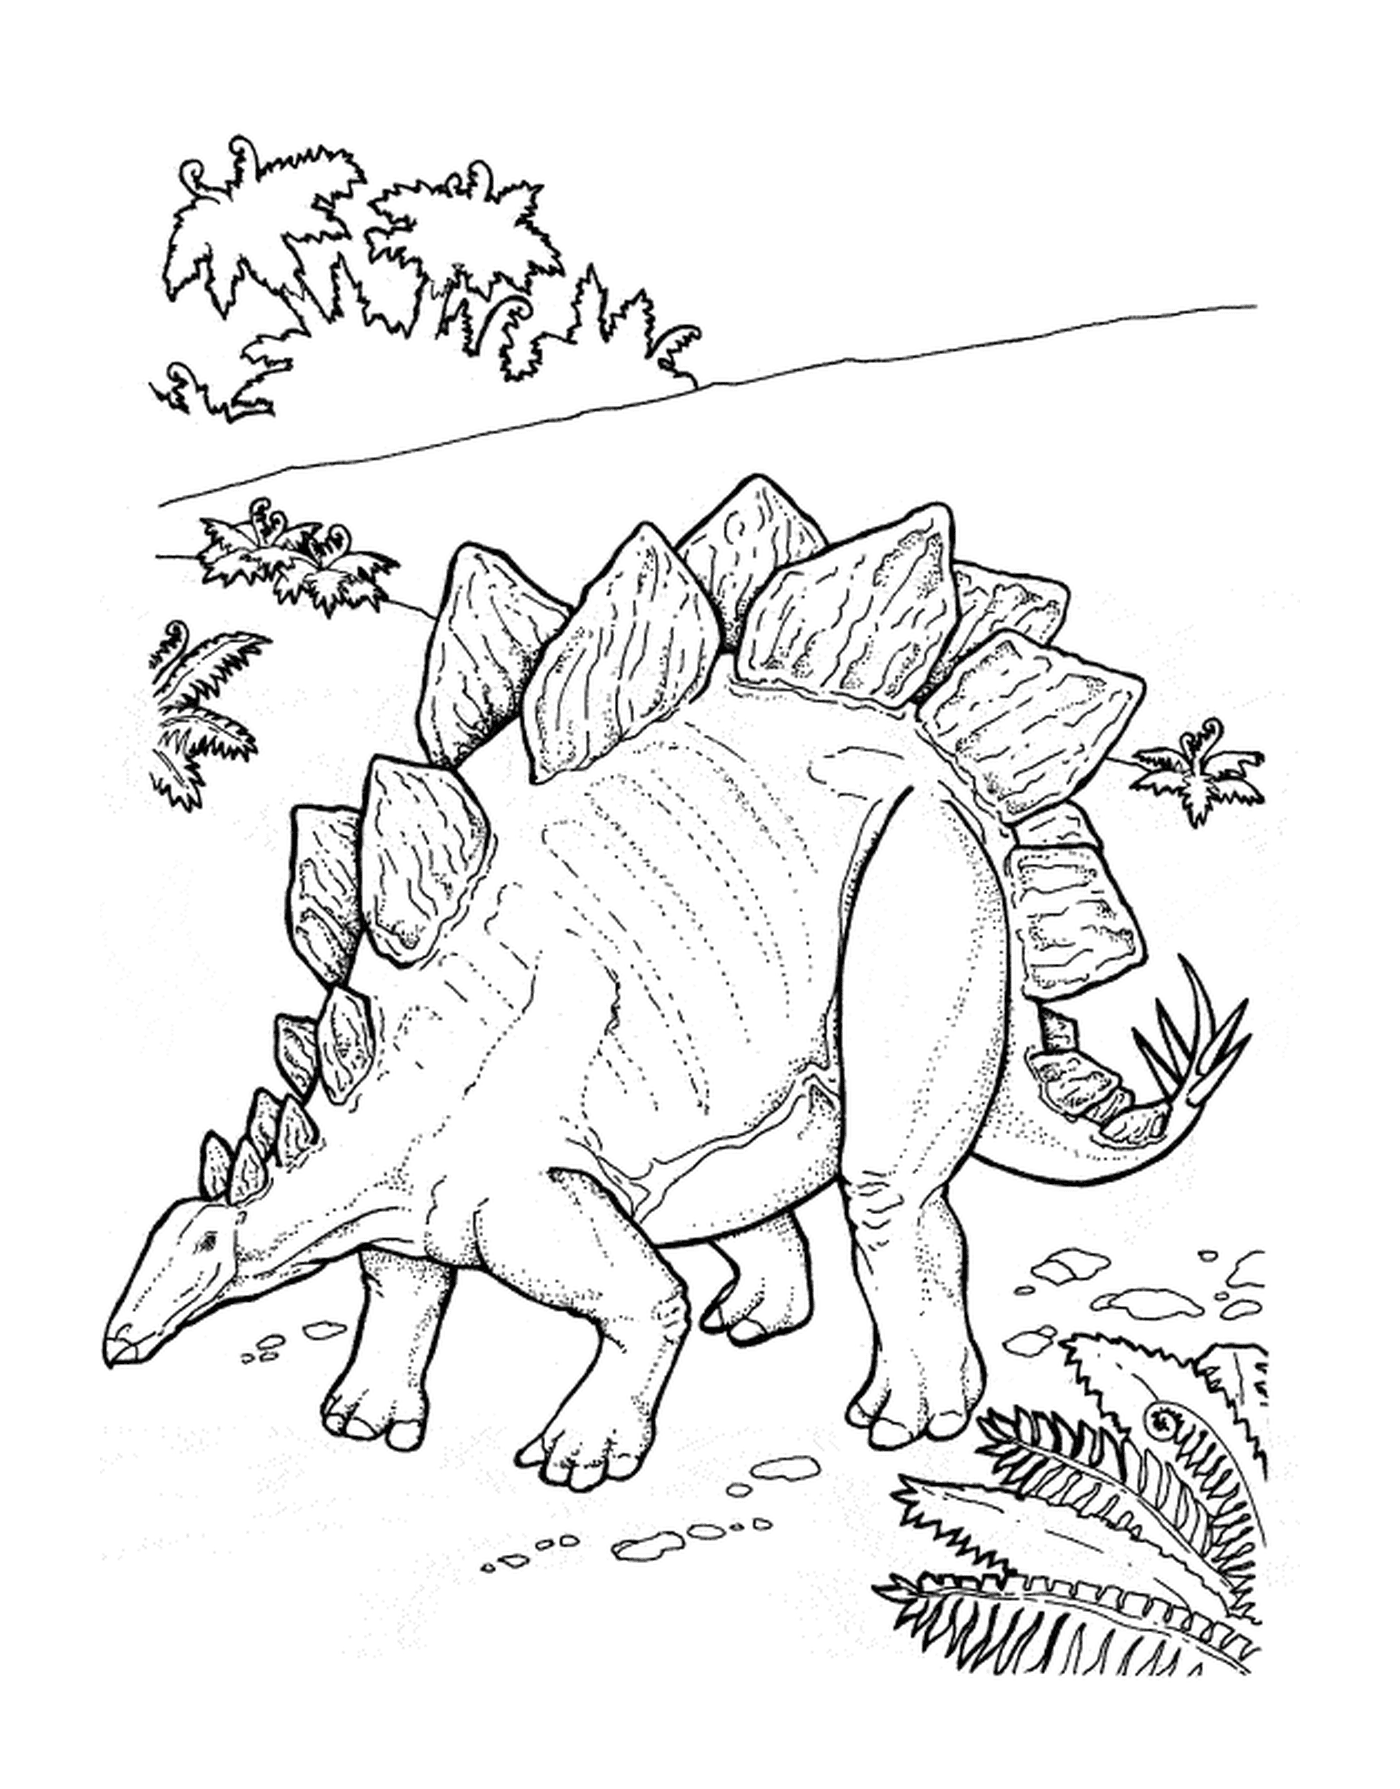  Erwachsener Stagosaur steht auf einer grünen Wiese 